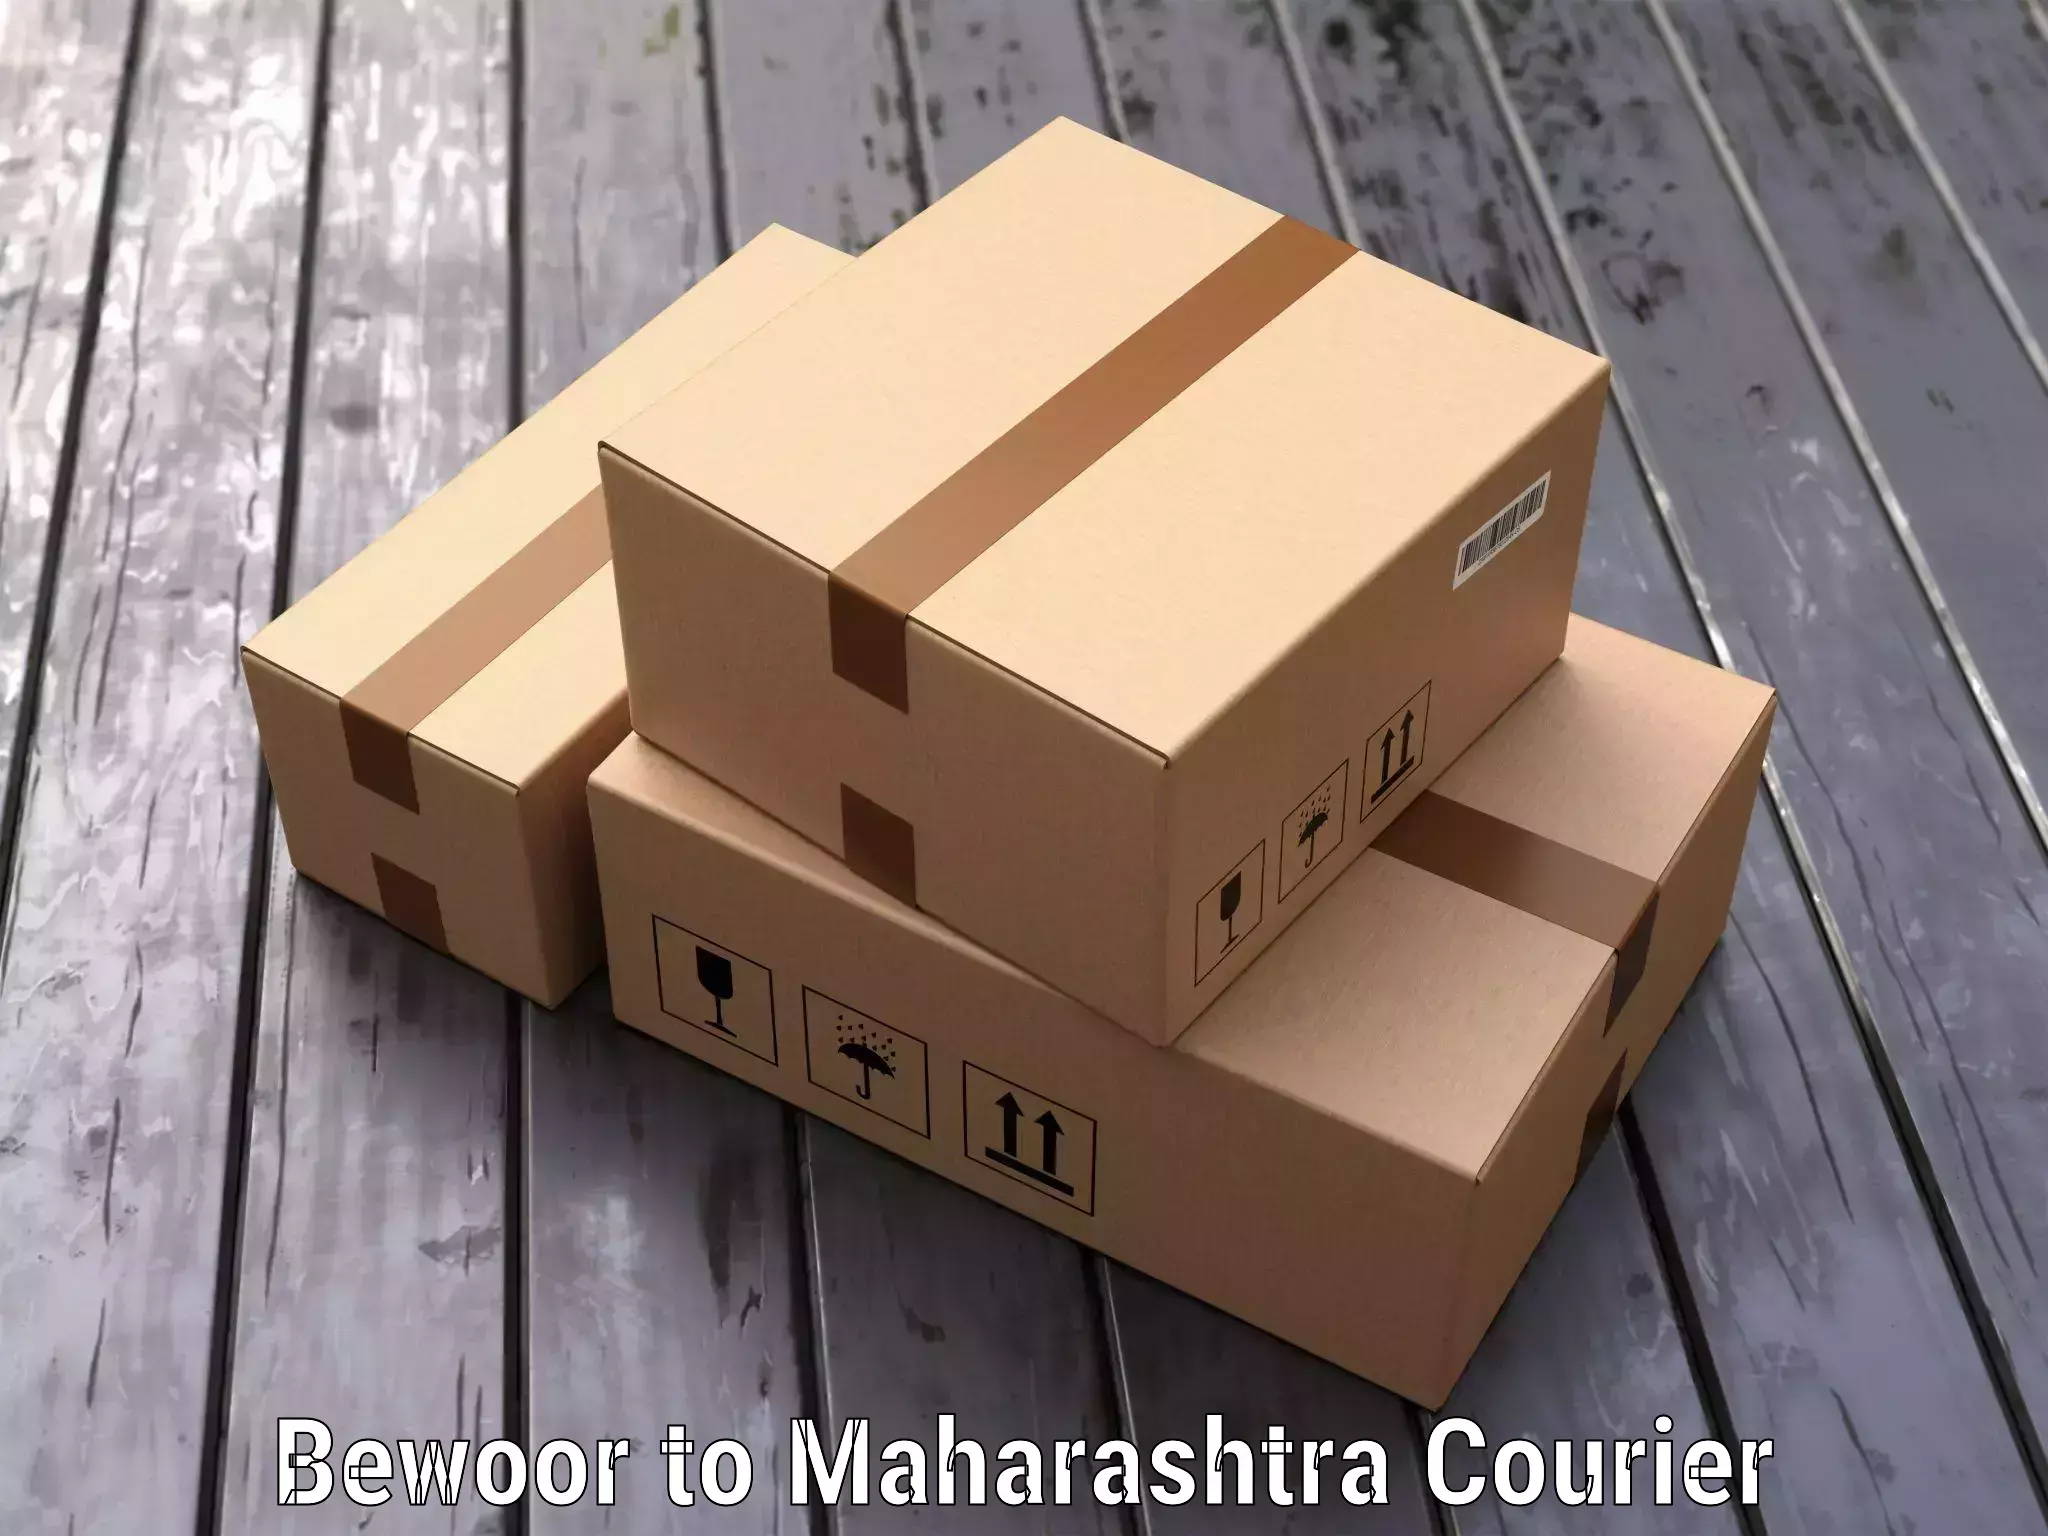 Baggage shipping experts Bewoor to Maharashtra